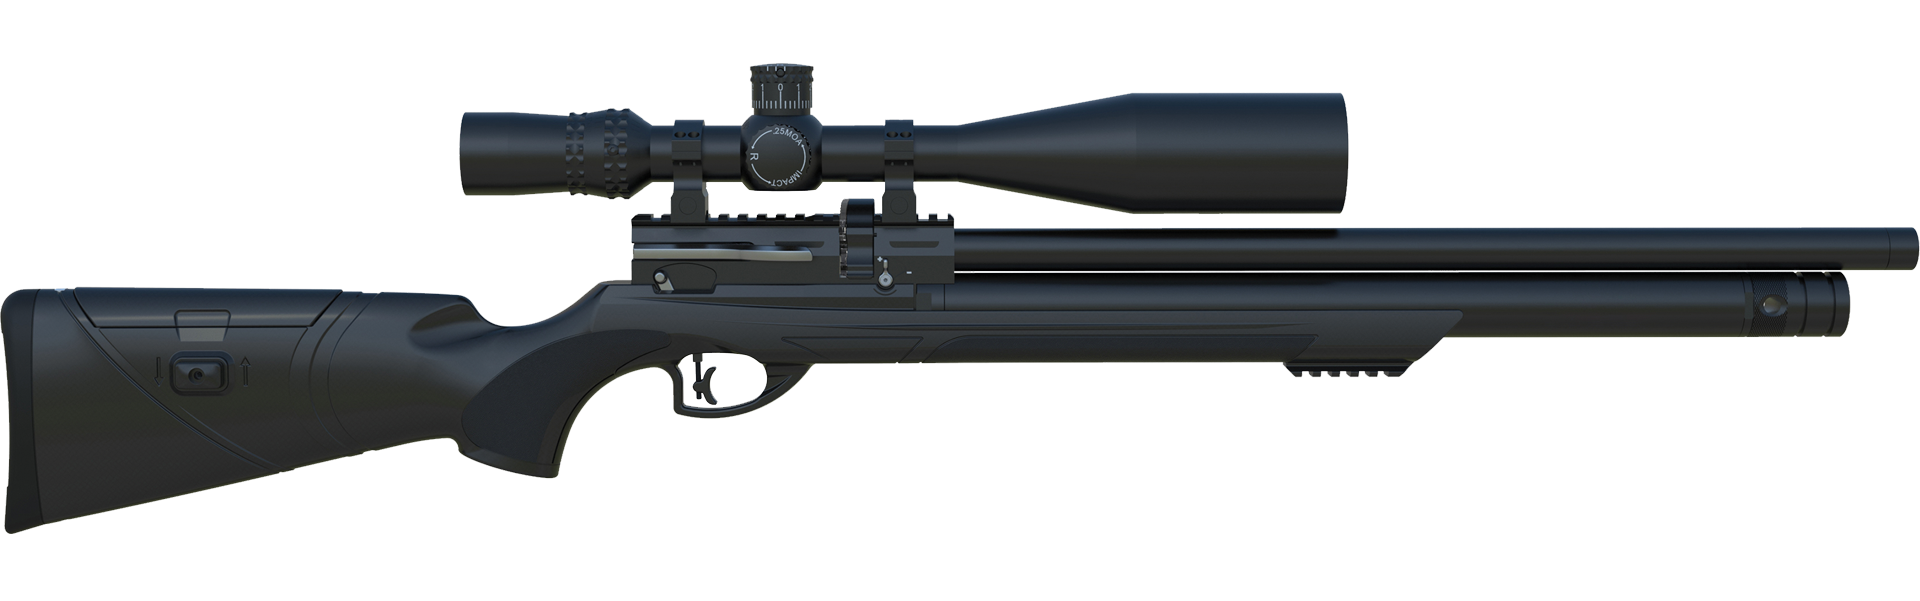 Niksan ARCHERO‐S PCP Havalı Tüfek5.5mm